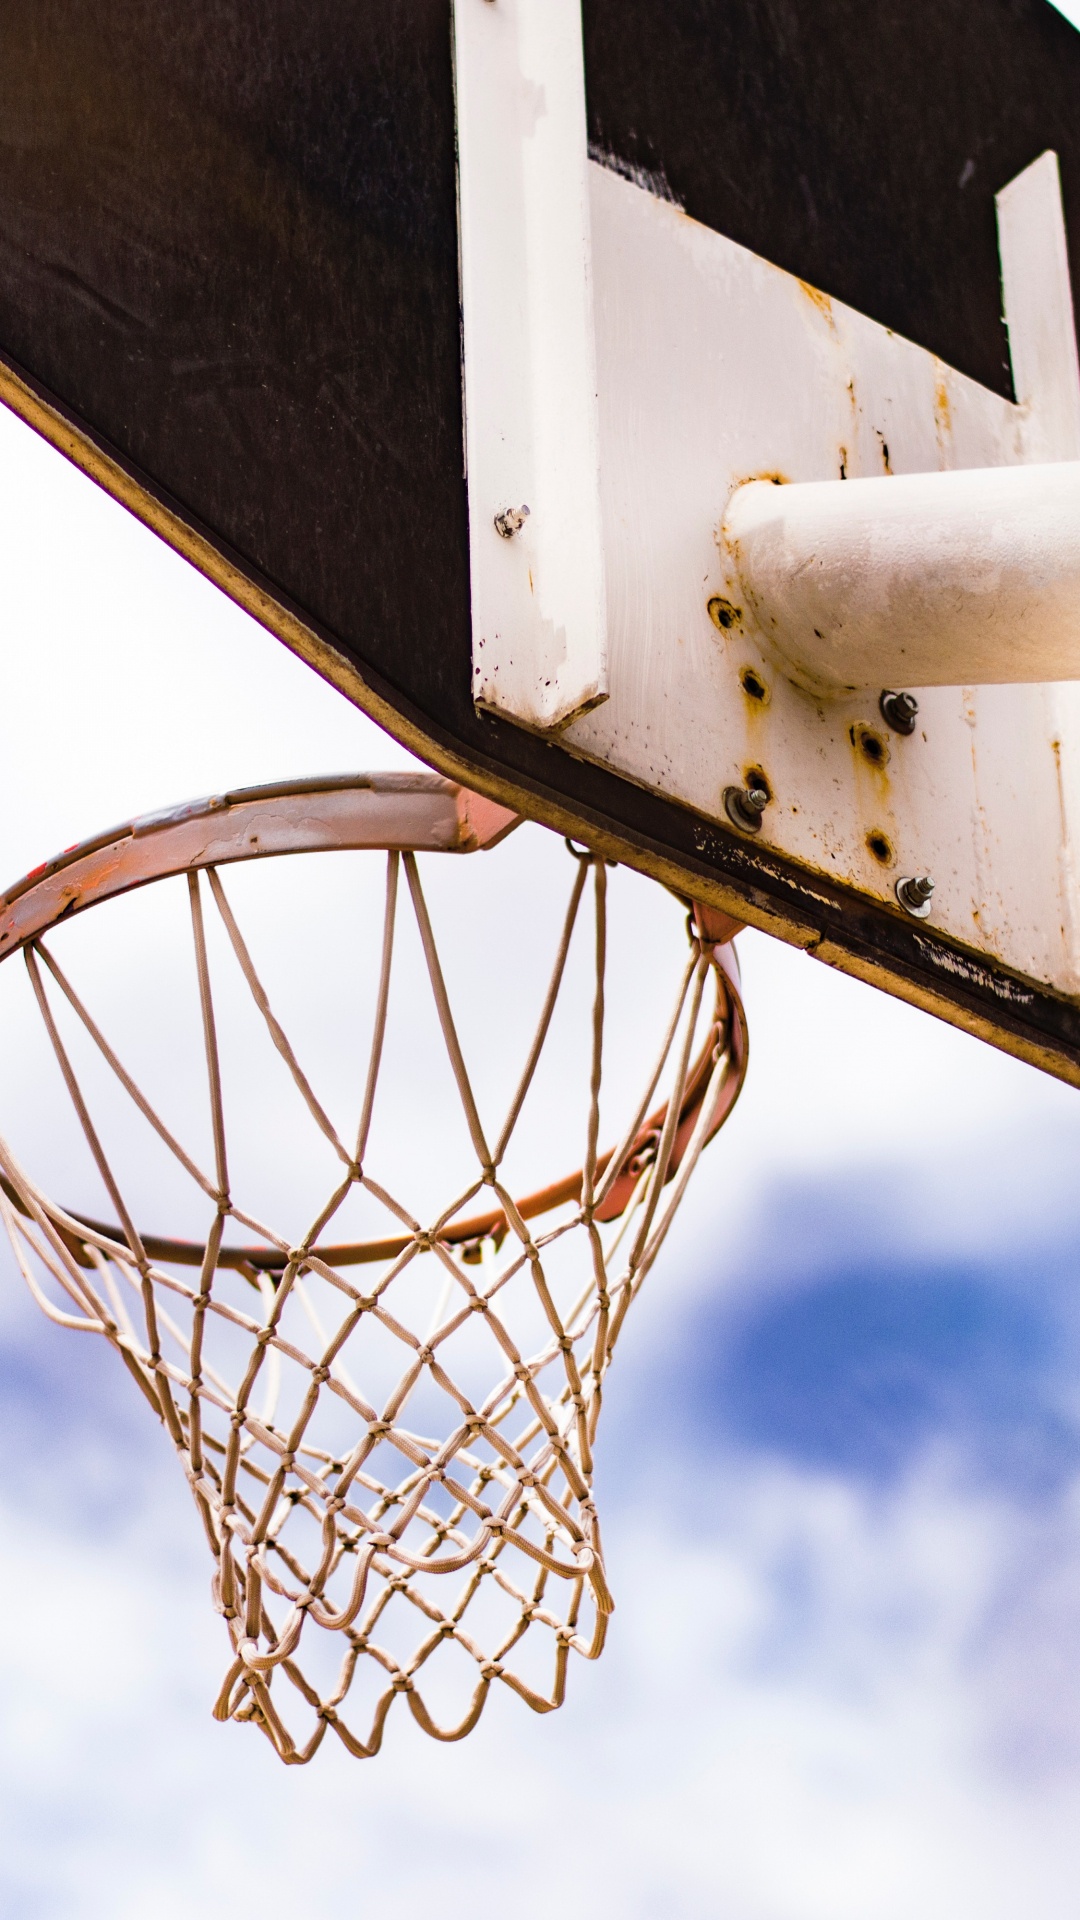 篮球, 篮球场, 街头, 团队运动, 球游戏 壁纸 1080x1920 允许